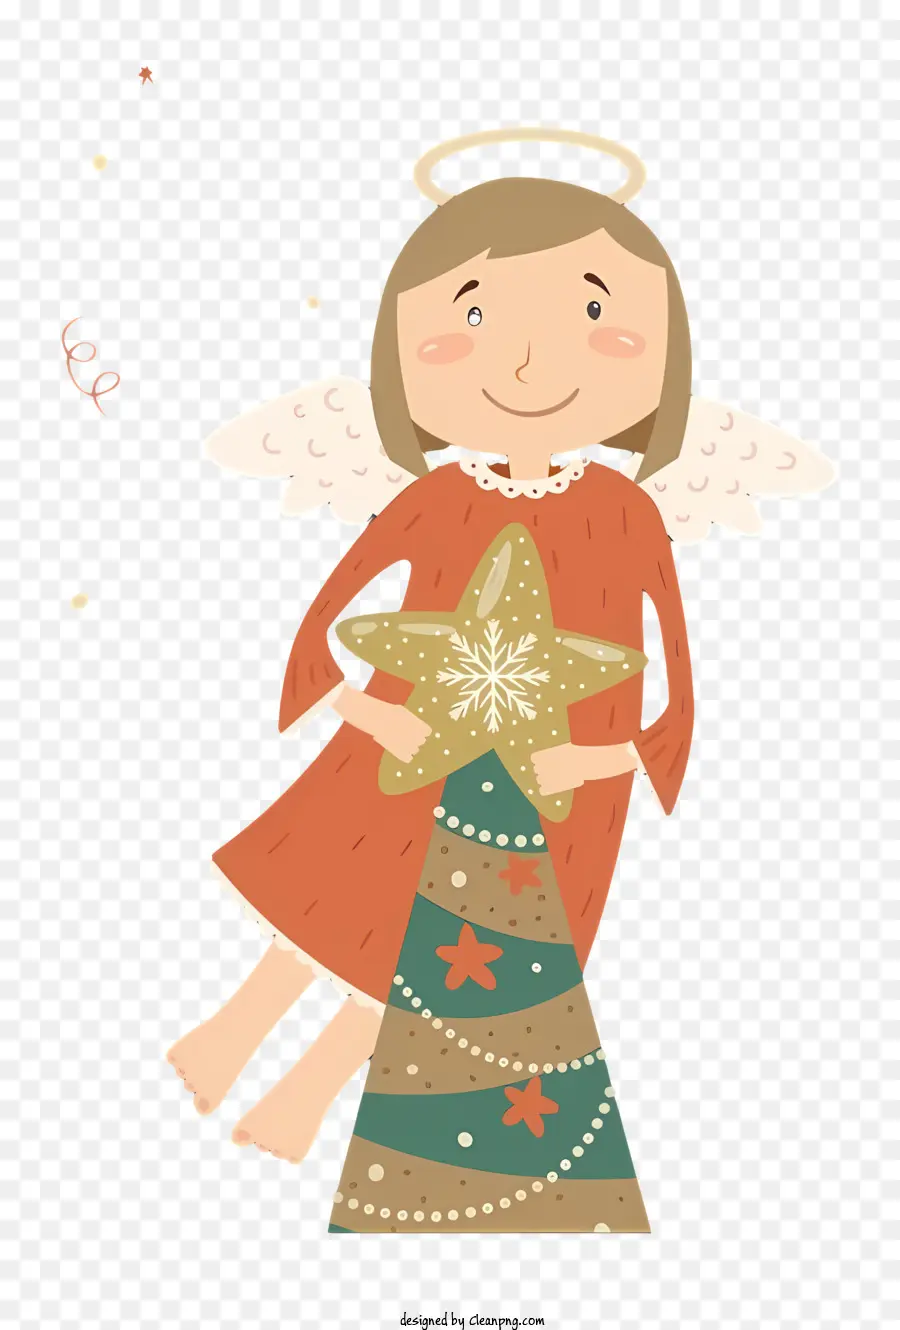 cây giáng sinh - Minh họa: Cô bé trong trang phục thiên thần trên cây Giáng sinh